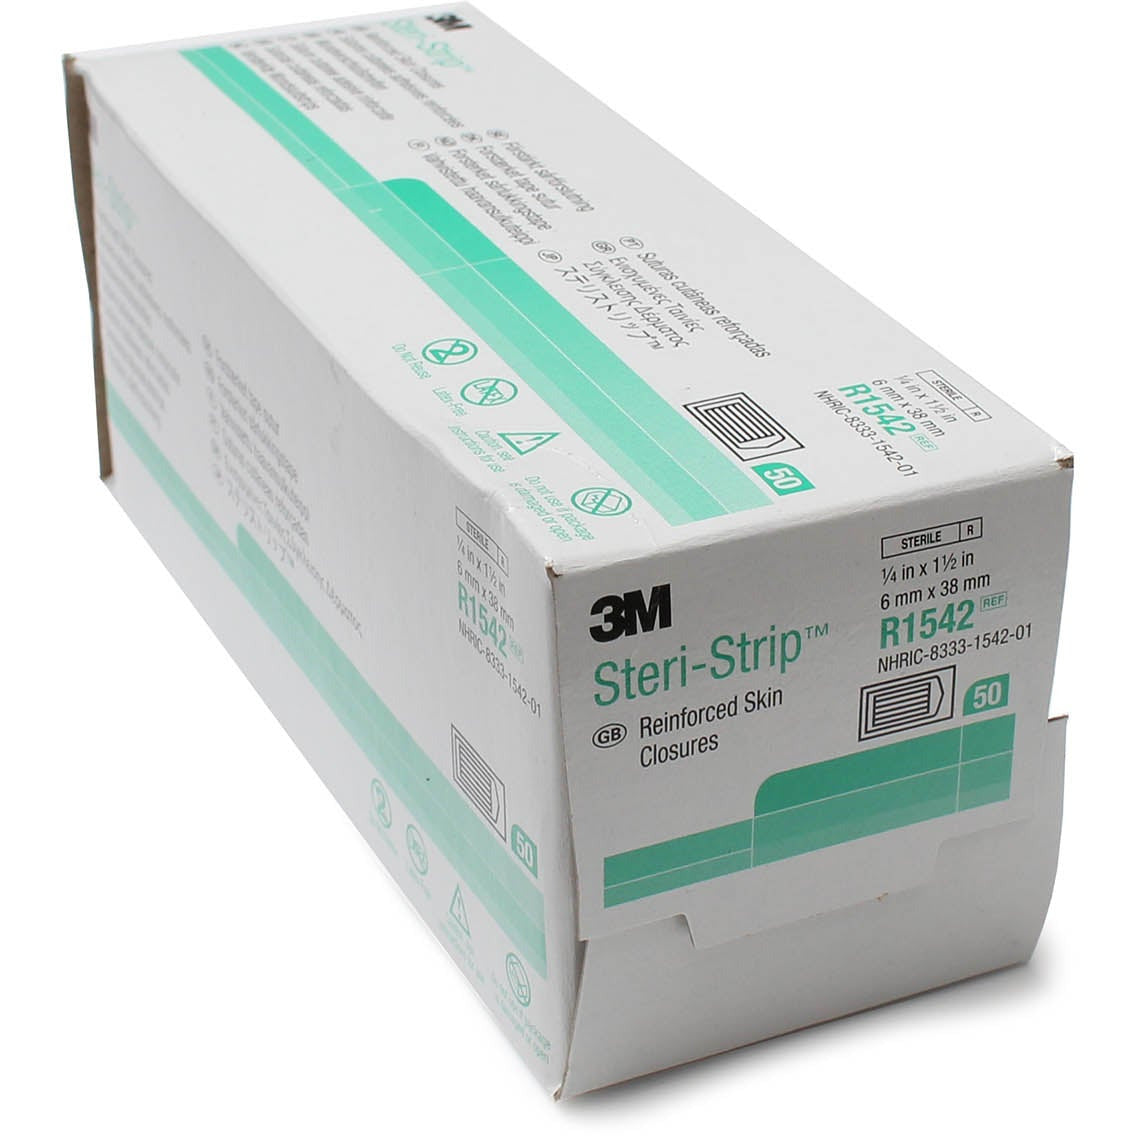 3M Steri-Strip Skin Closure (Reinforced) - 6mm x 38mm x 50